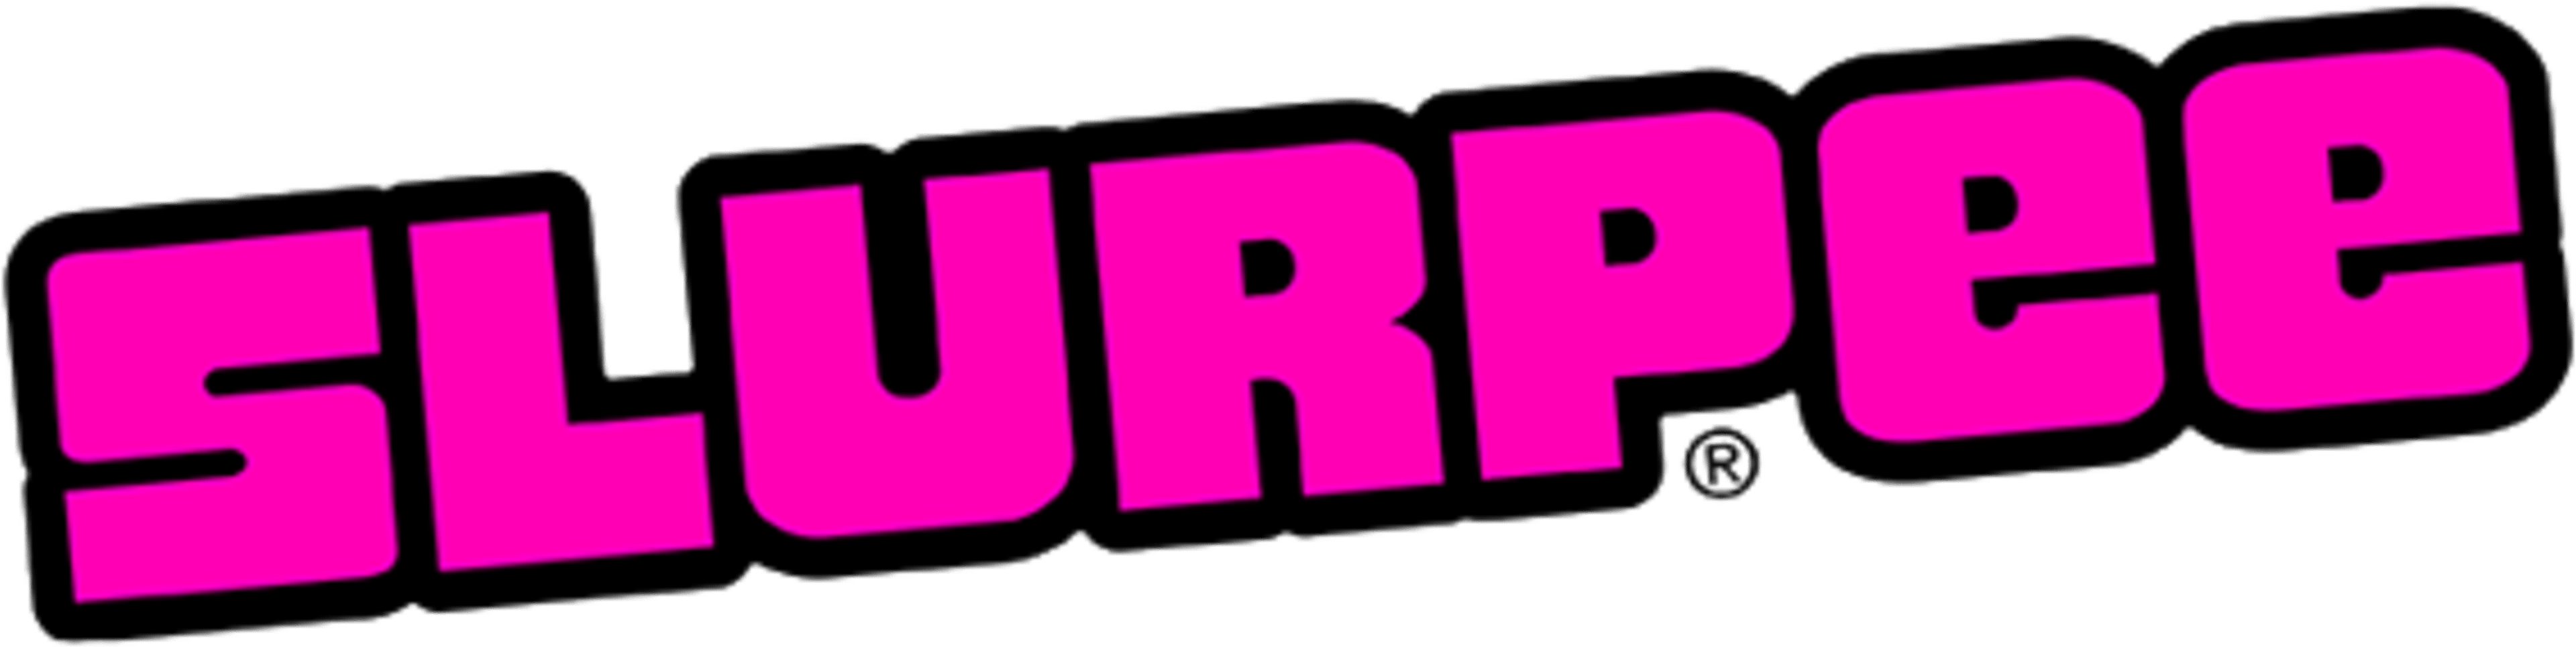 Slurpee Logo - Download Slurpee Logo Size PNG Image